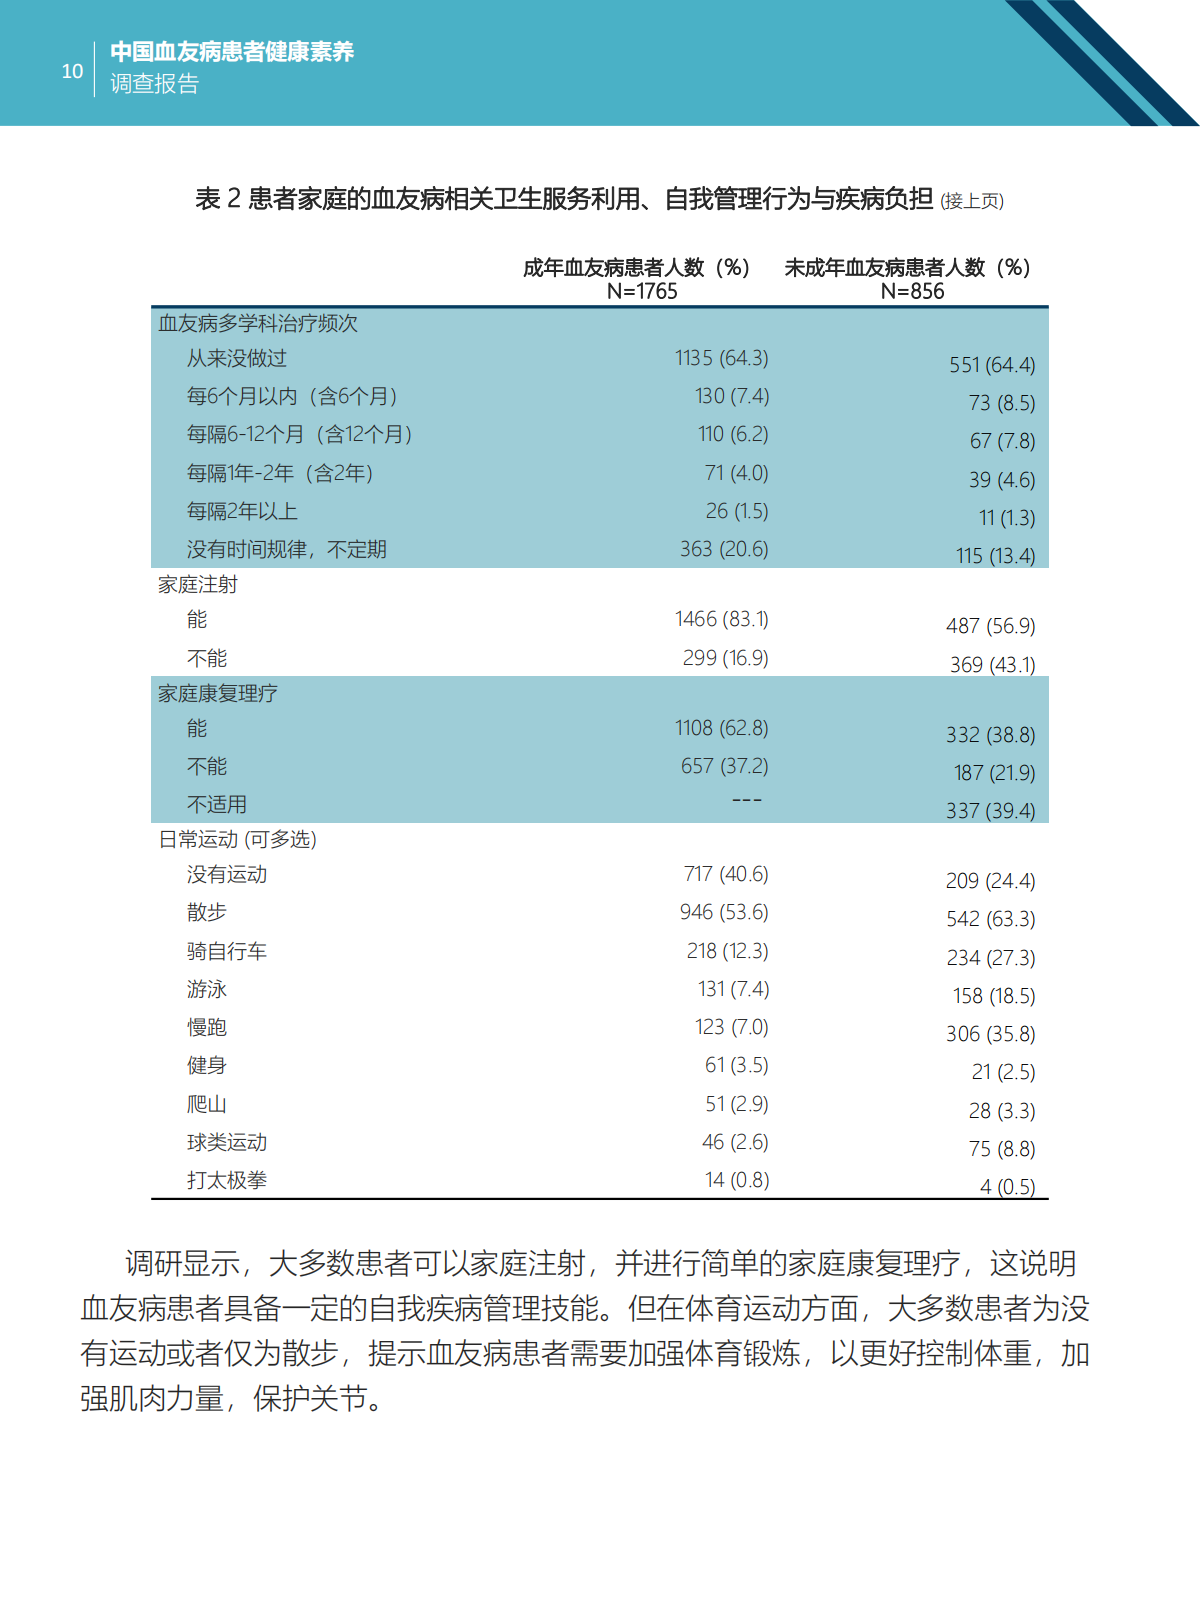 中国血友病患者健康素养调查报告 Final 20240411_10.png